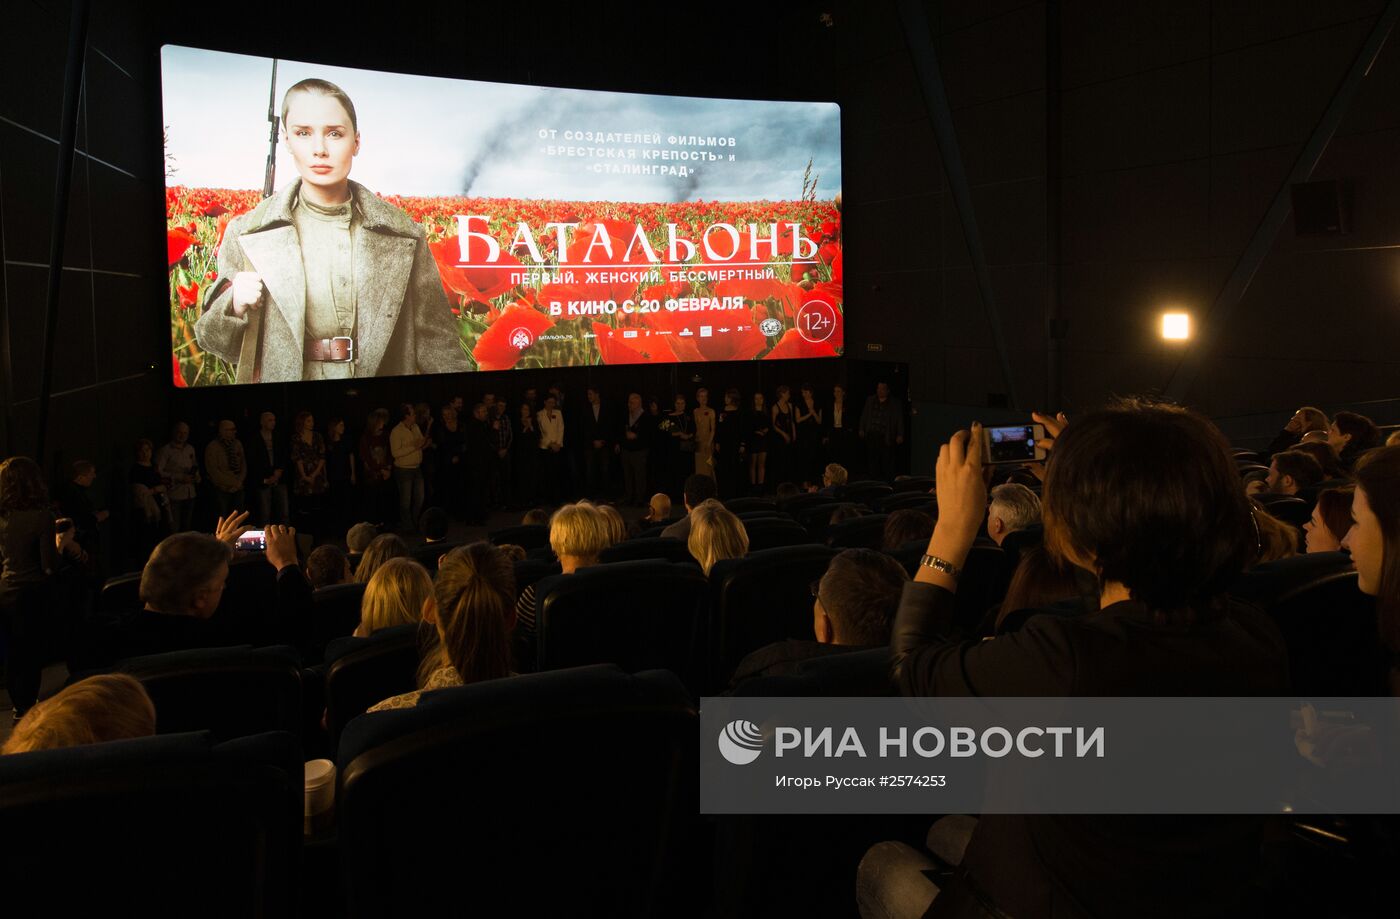 Премьера фильма "Батальонъ" в Санкт-Петербурге